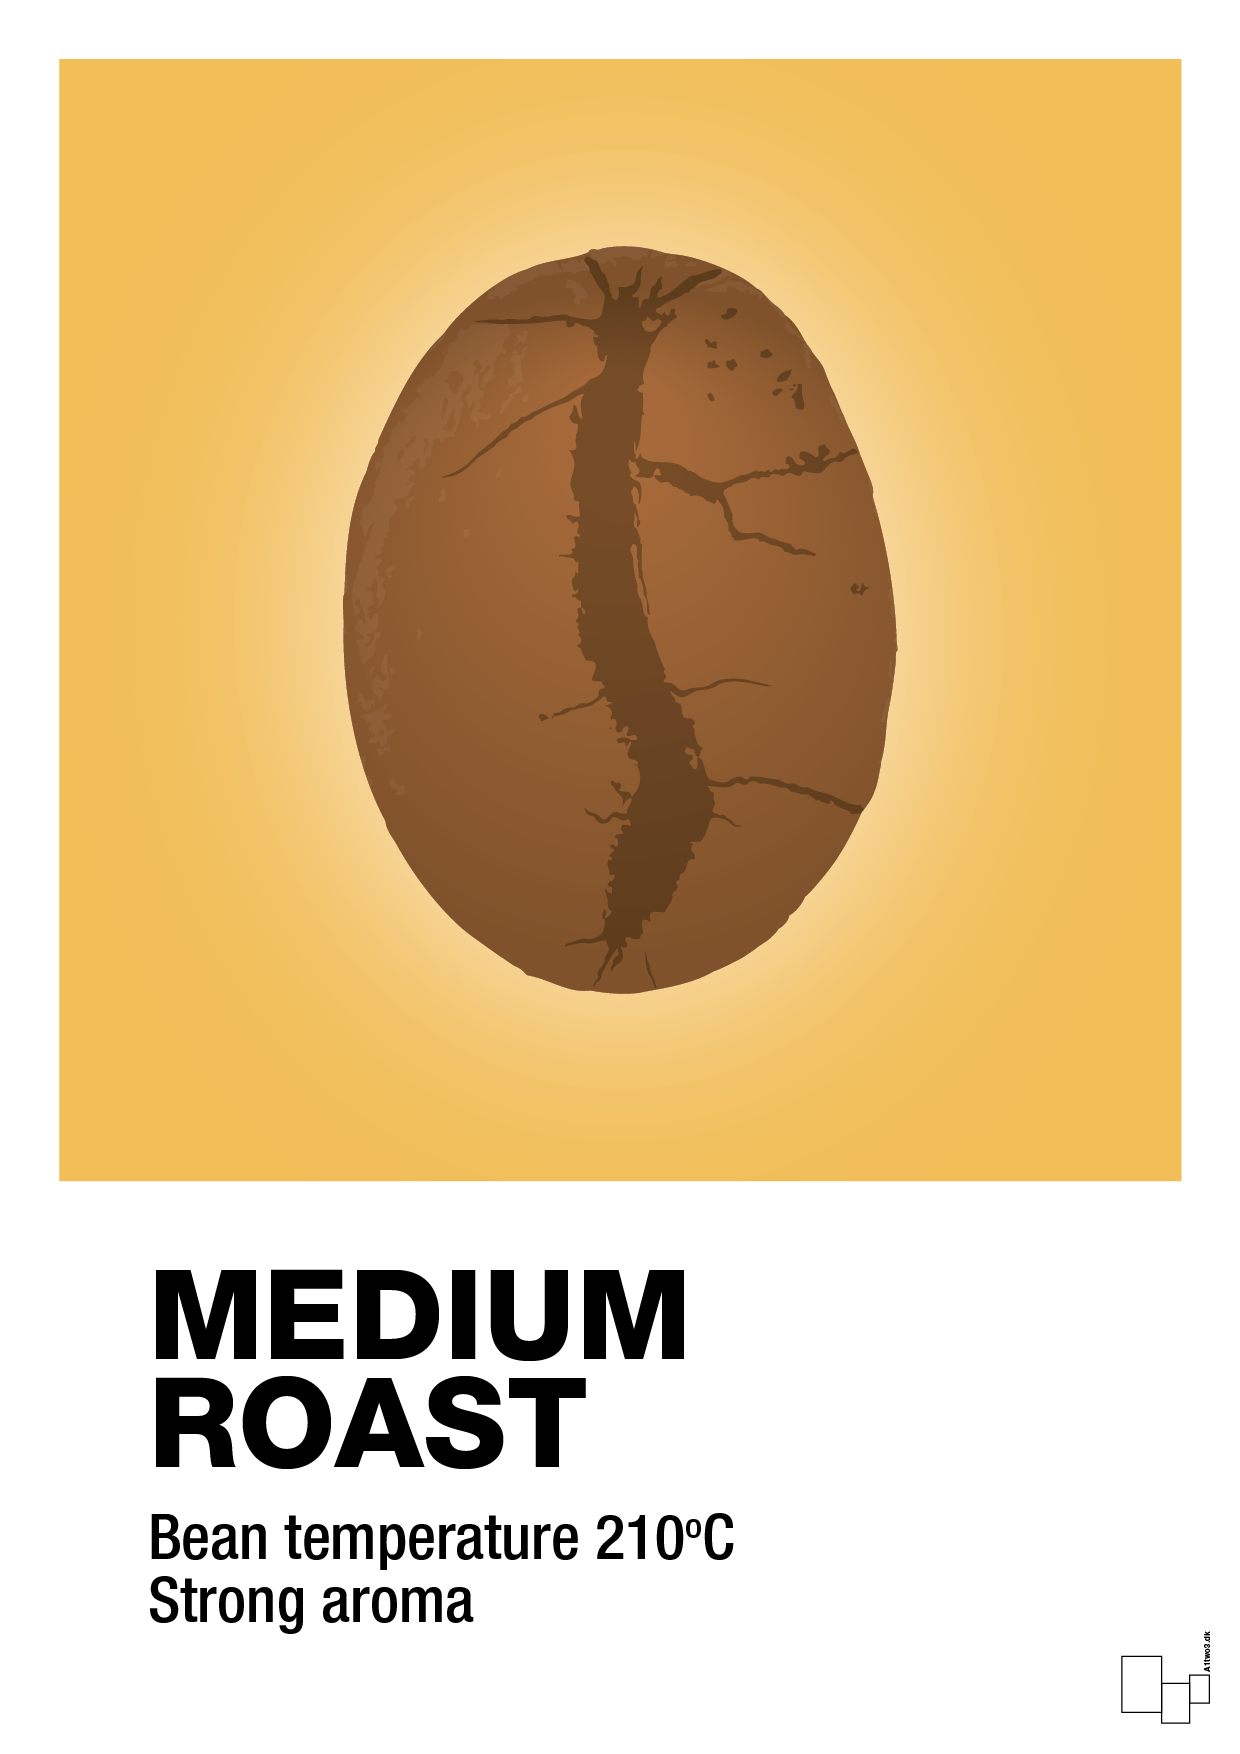 medium roast - Plakat med Mad & Drikke i Honeycomb